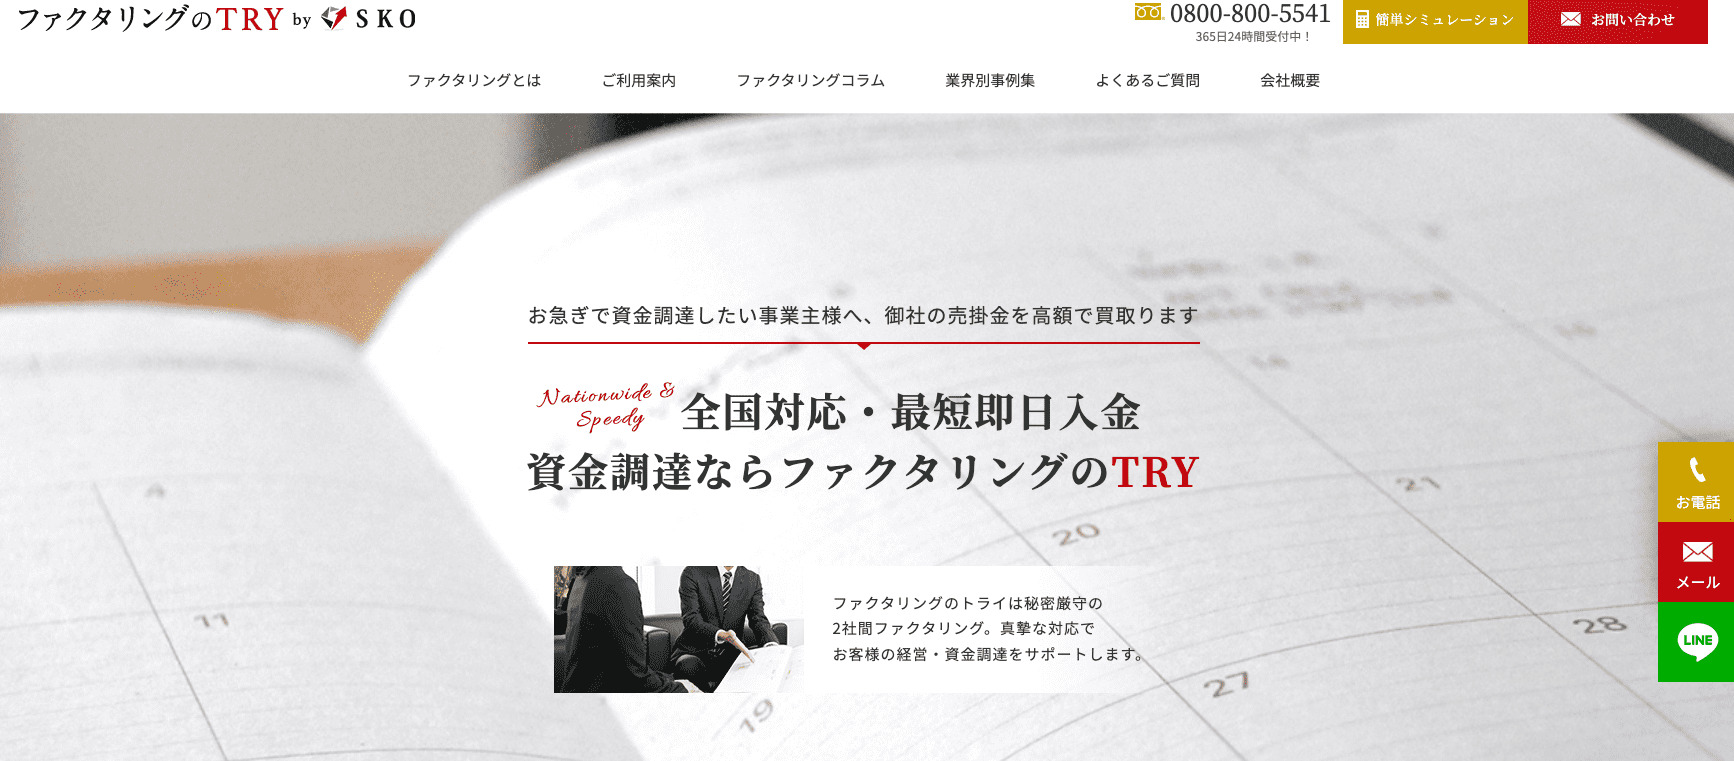 仙台でおすすめのファクタリング会社「ファクタリングのTRY」の公式画像